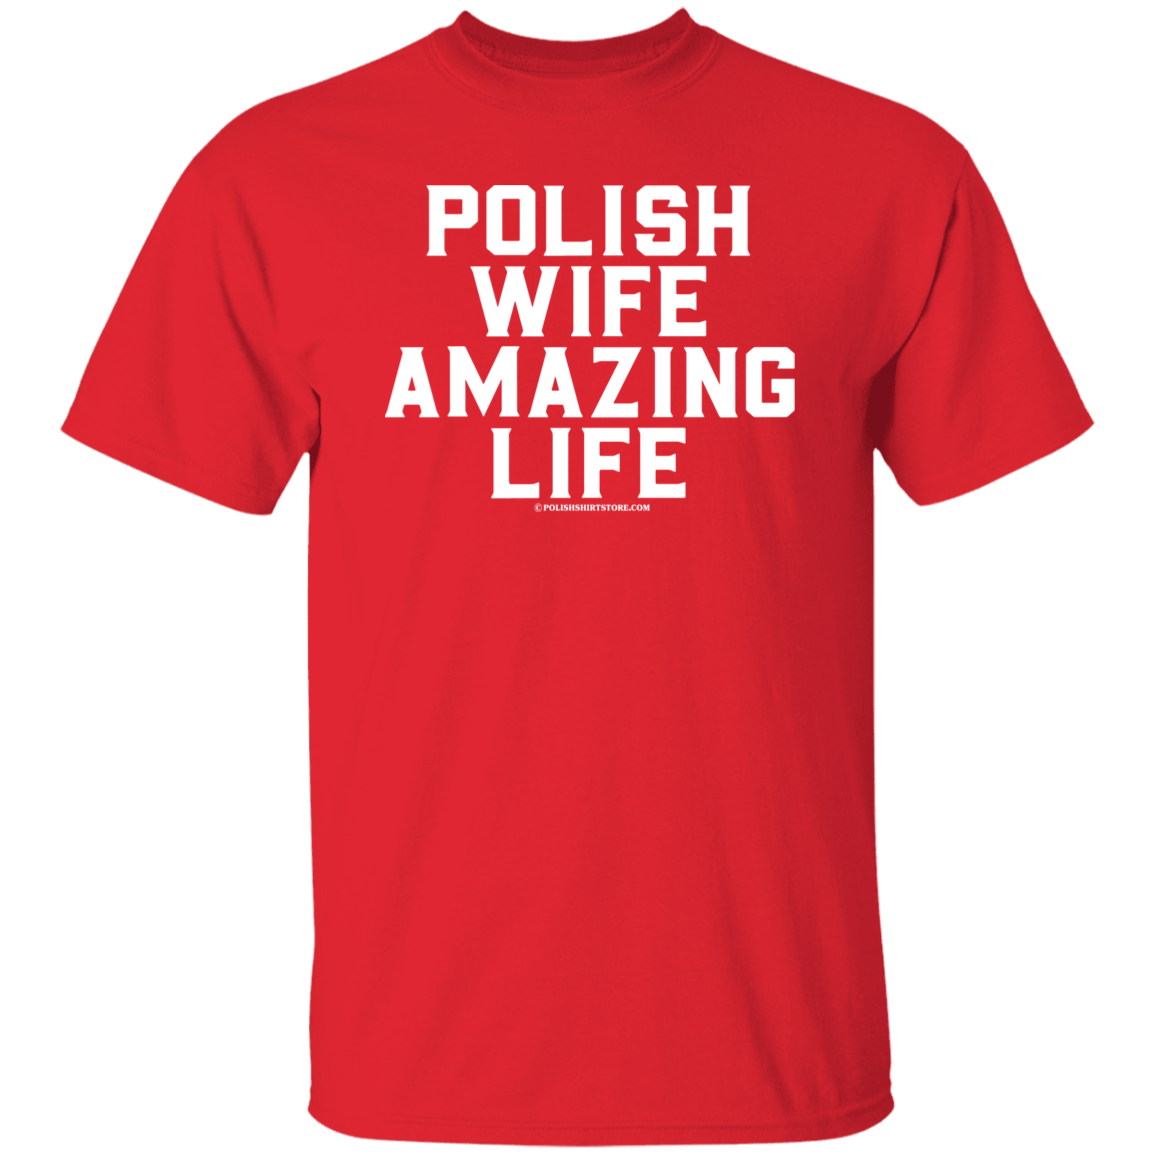 Polish Wife Amazing Life Apparel CustomCat G500 5.3 oz. T-Shirt Red S